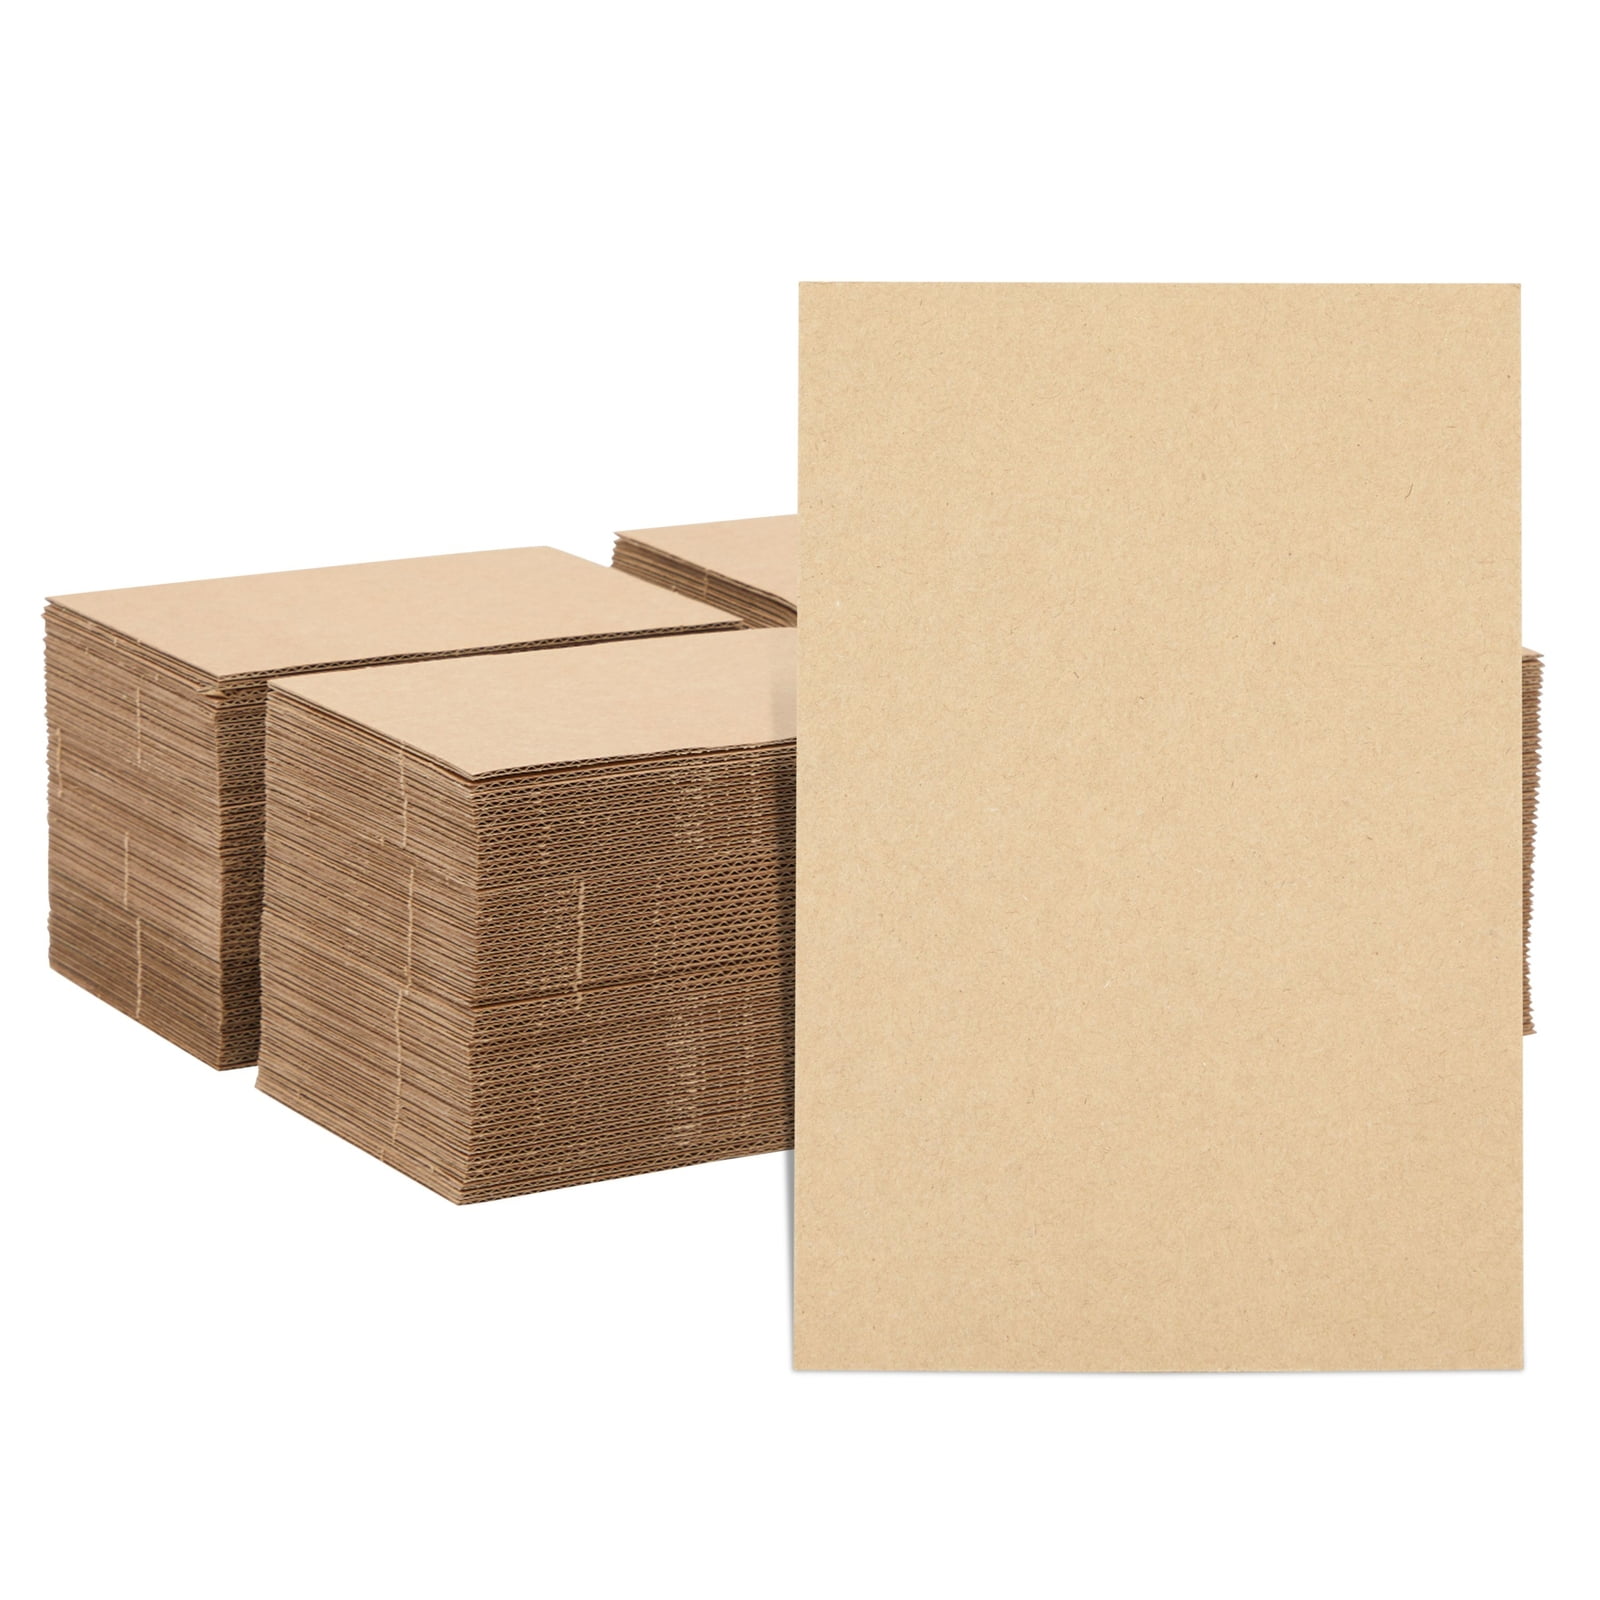 Wabjtam 200 Pack Corrugated Cardboard Sheets For Mailers, Flat